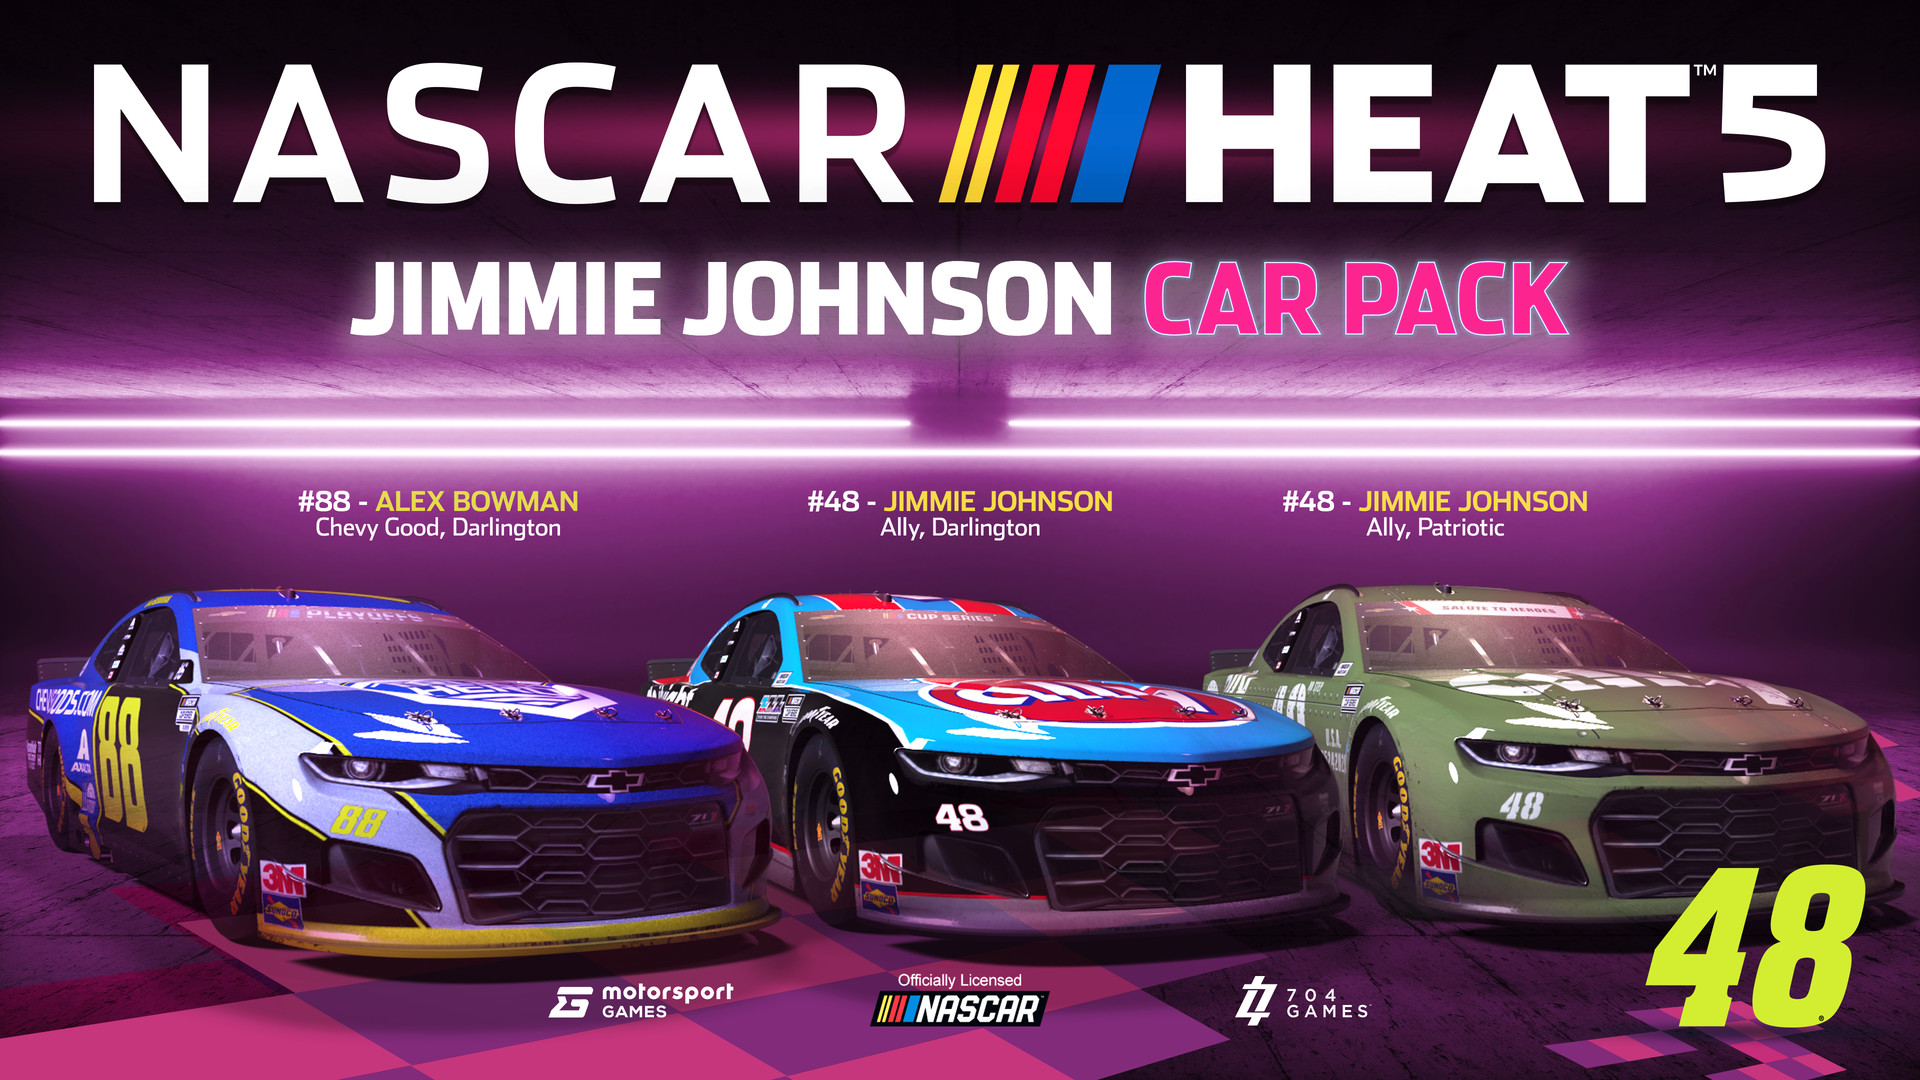 NASCAR Heat 5 - Jimmie Johnson Pack Featured Screenshot #1